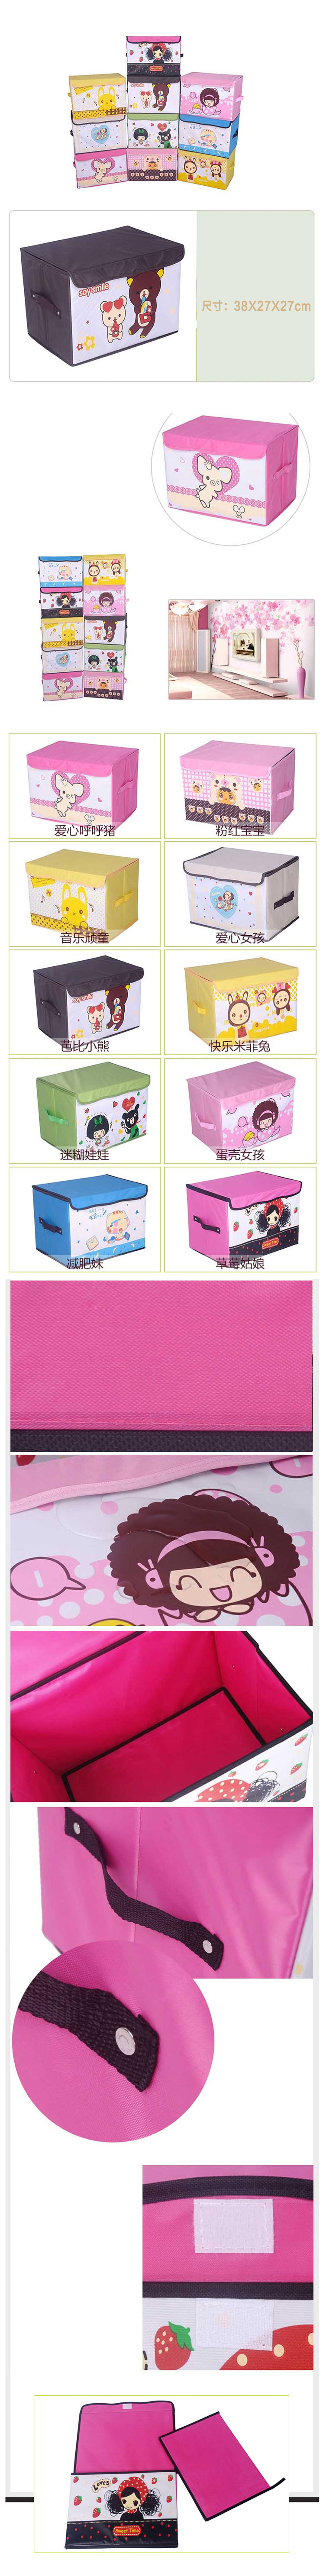 友纳 牛津布卡通系列印花卡通收纳箱 儿童玩具卡通收纳盒 收纳箱（爱心呼呼猪） 。